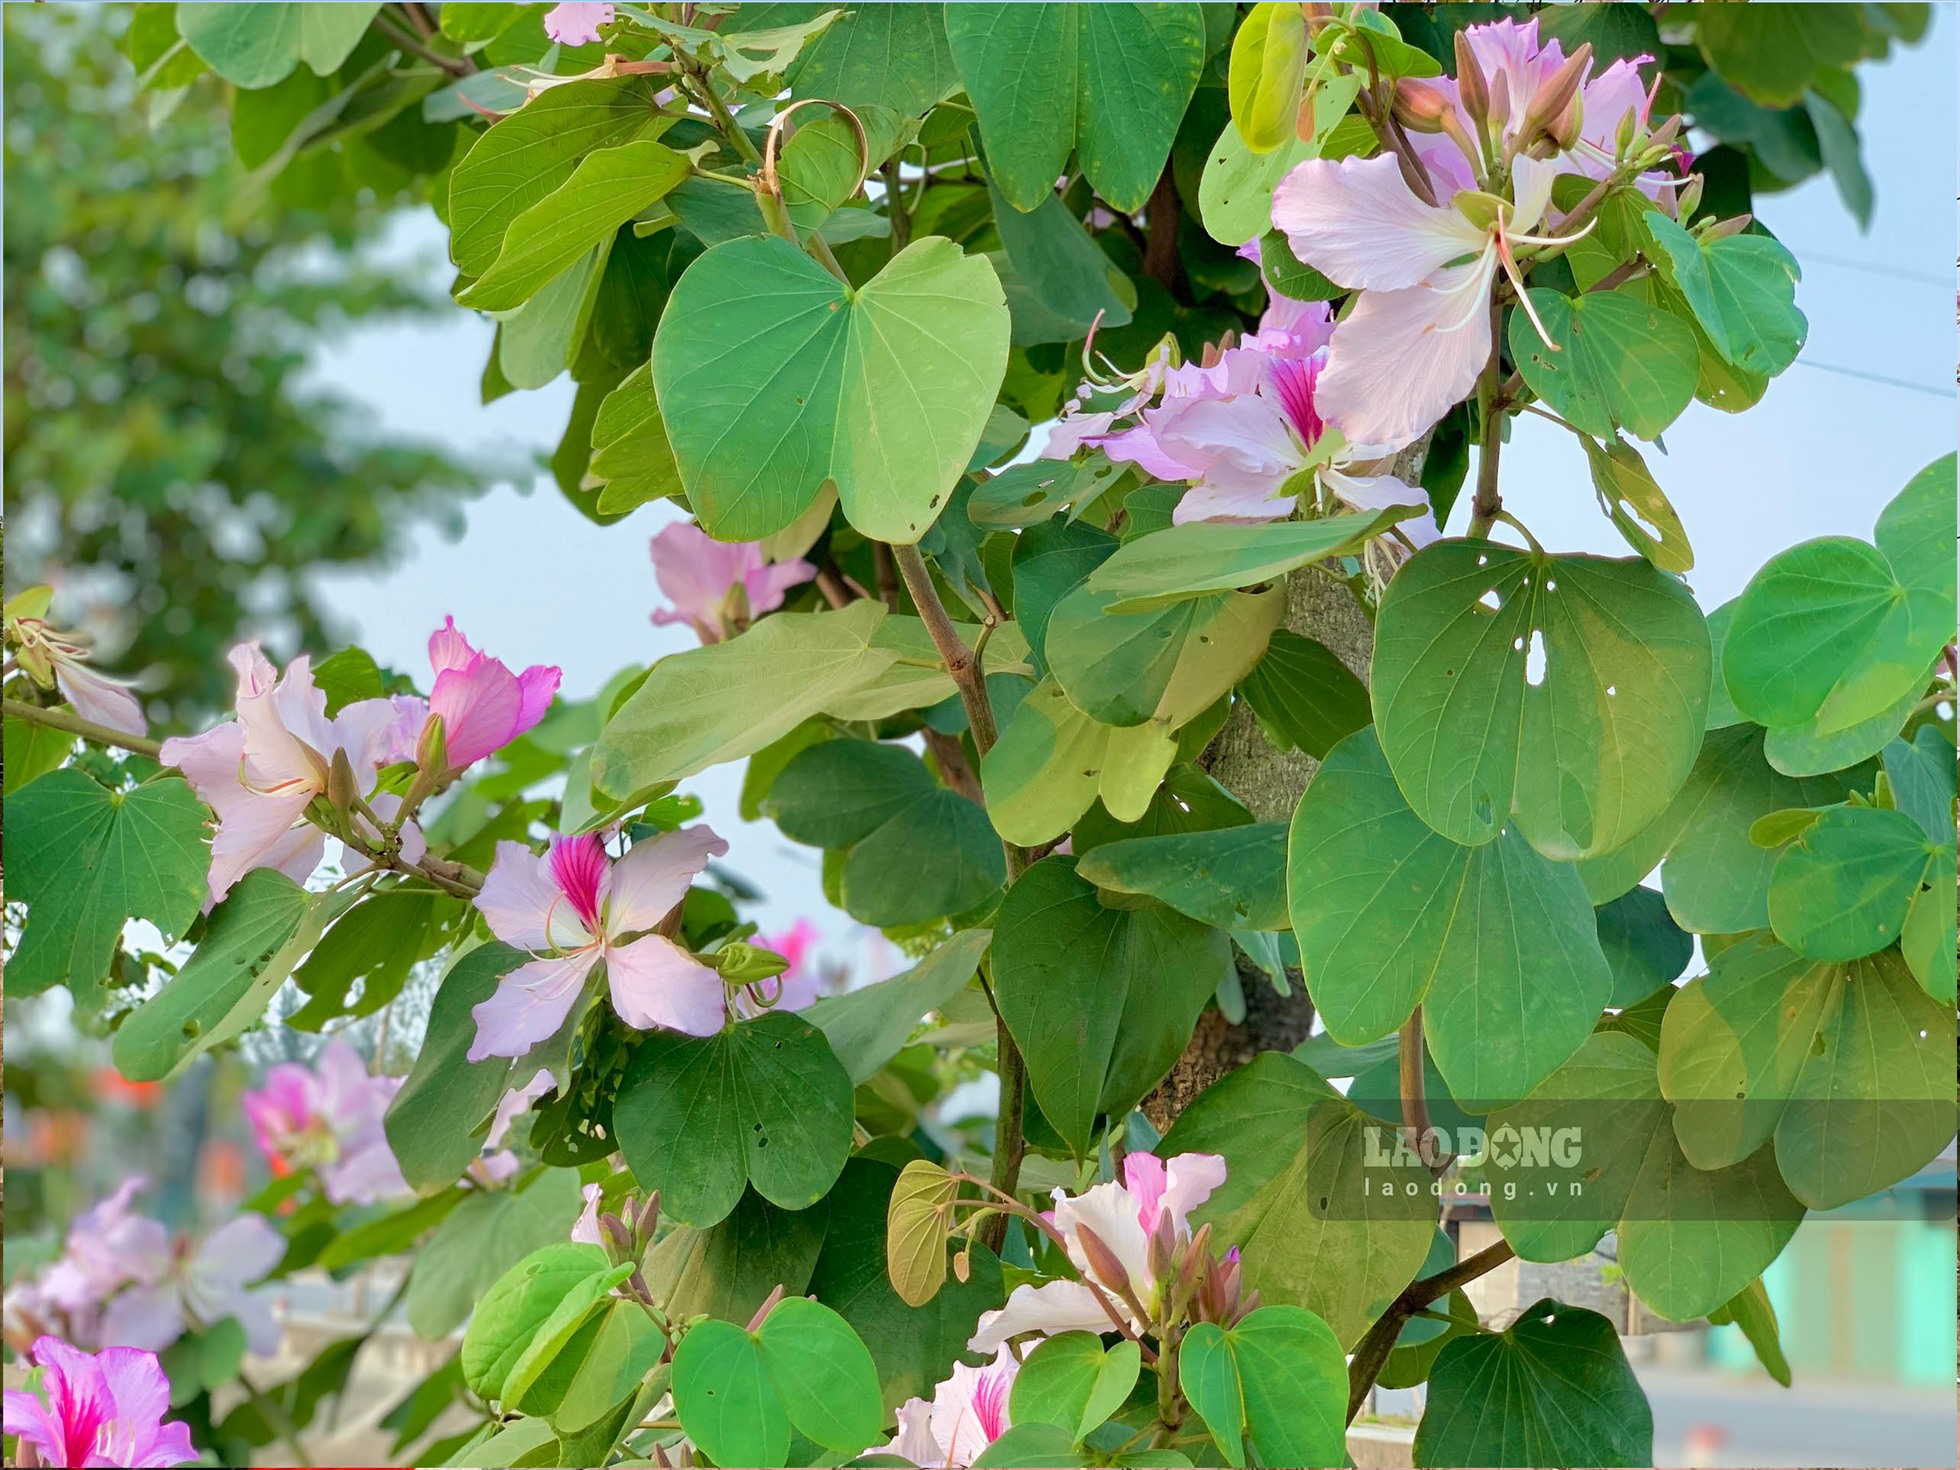 Hoa ban sở hữu vẻ đẹp mỏng manh, tinh khôi, với 4 - 5 cánh mềm mại và nở kéo dài từ 2 - 3 tháng với nhiều màu, đặc trưng nhất là trắng, hồng và tím.